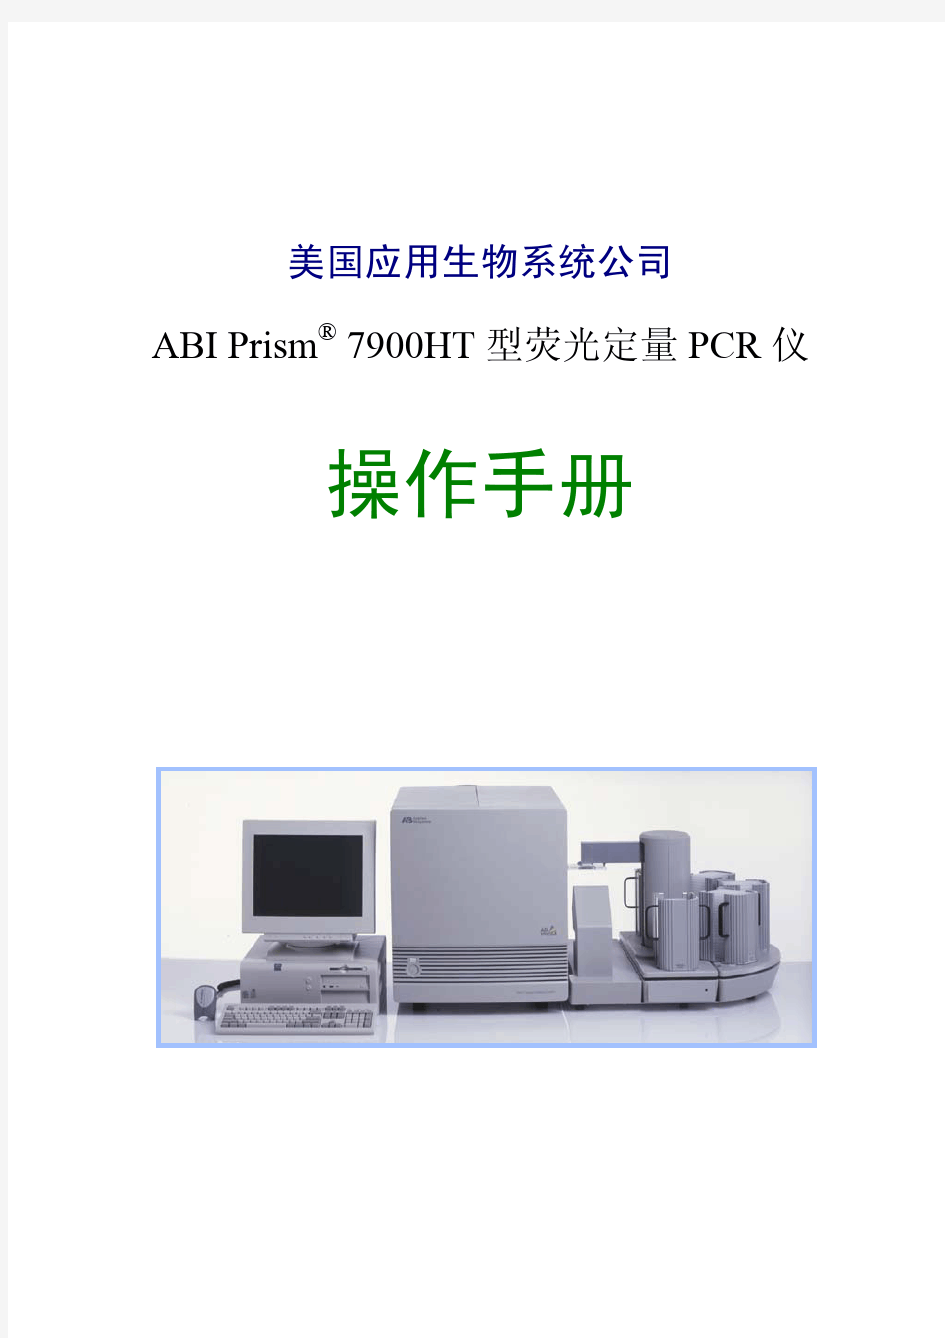 ABI公司7900HT型荧光定量PCR仪中文操作手册vA